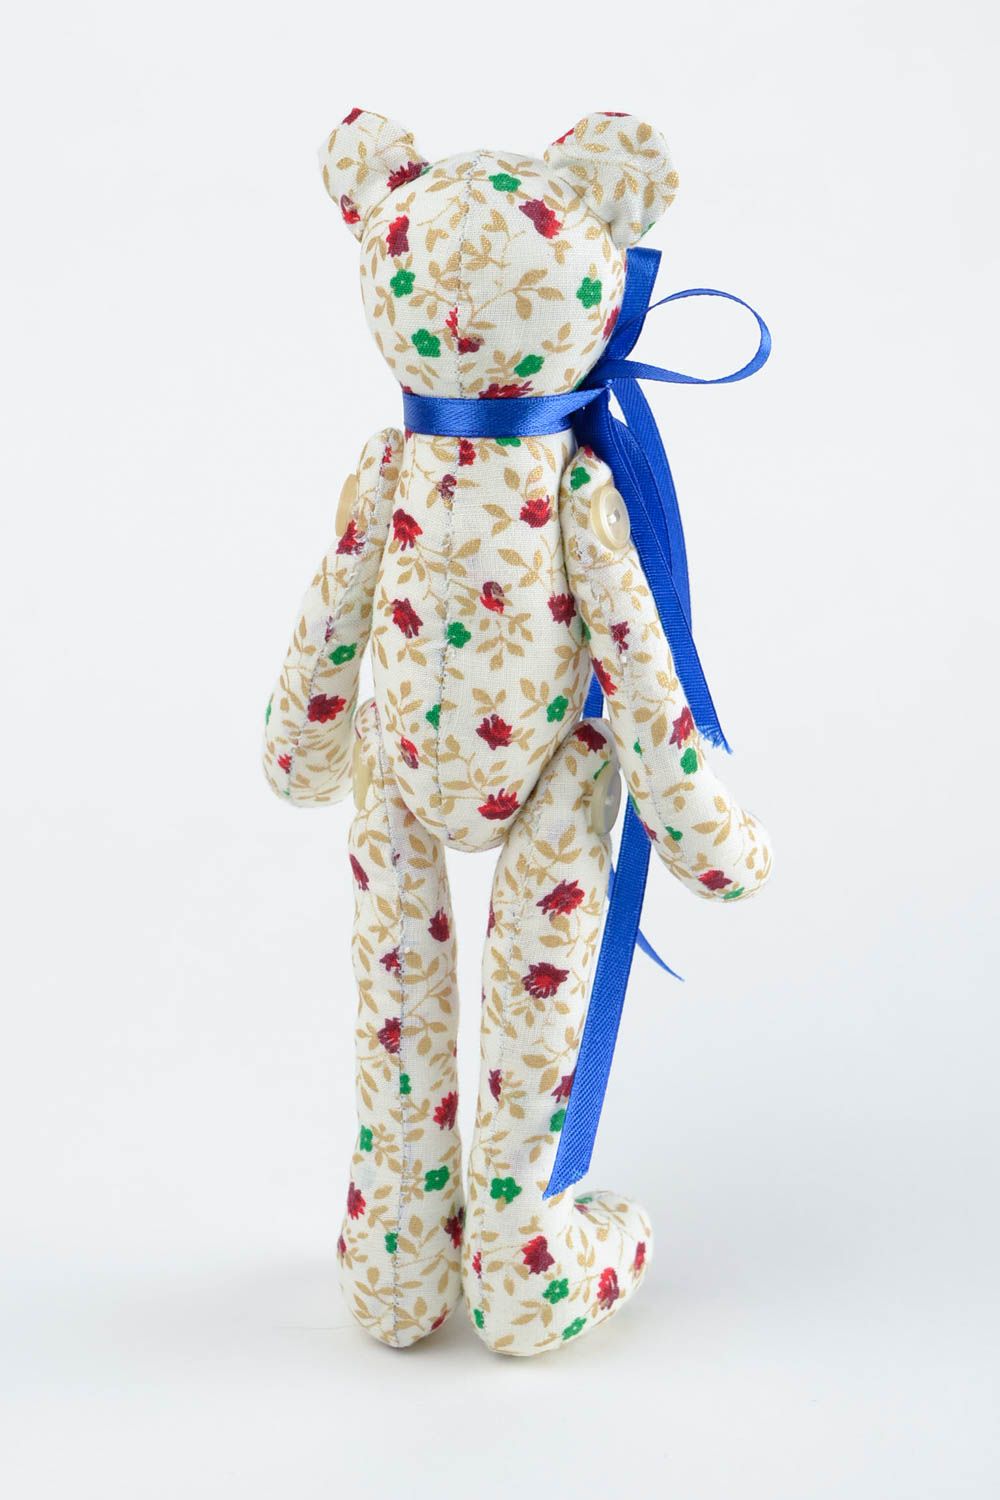 Jouet Ours en tissu de coton fait main avec noeud bleu Cadeau pour enfant photo 5